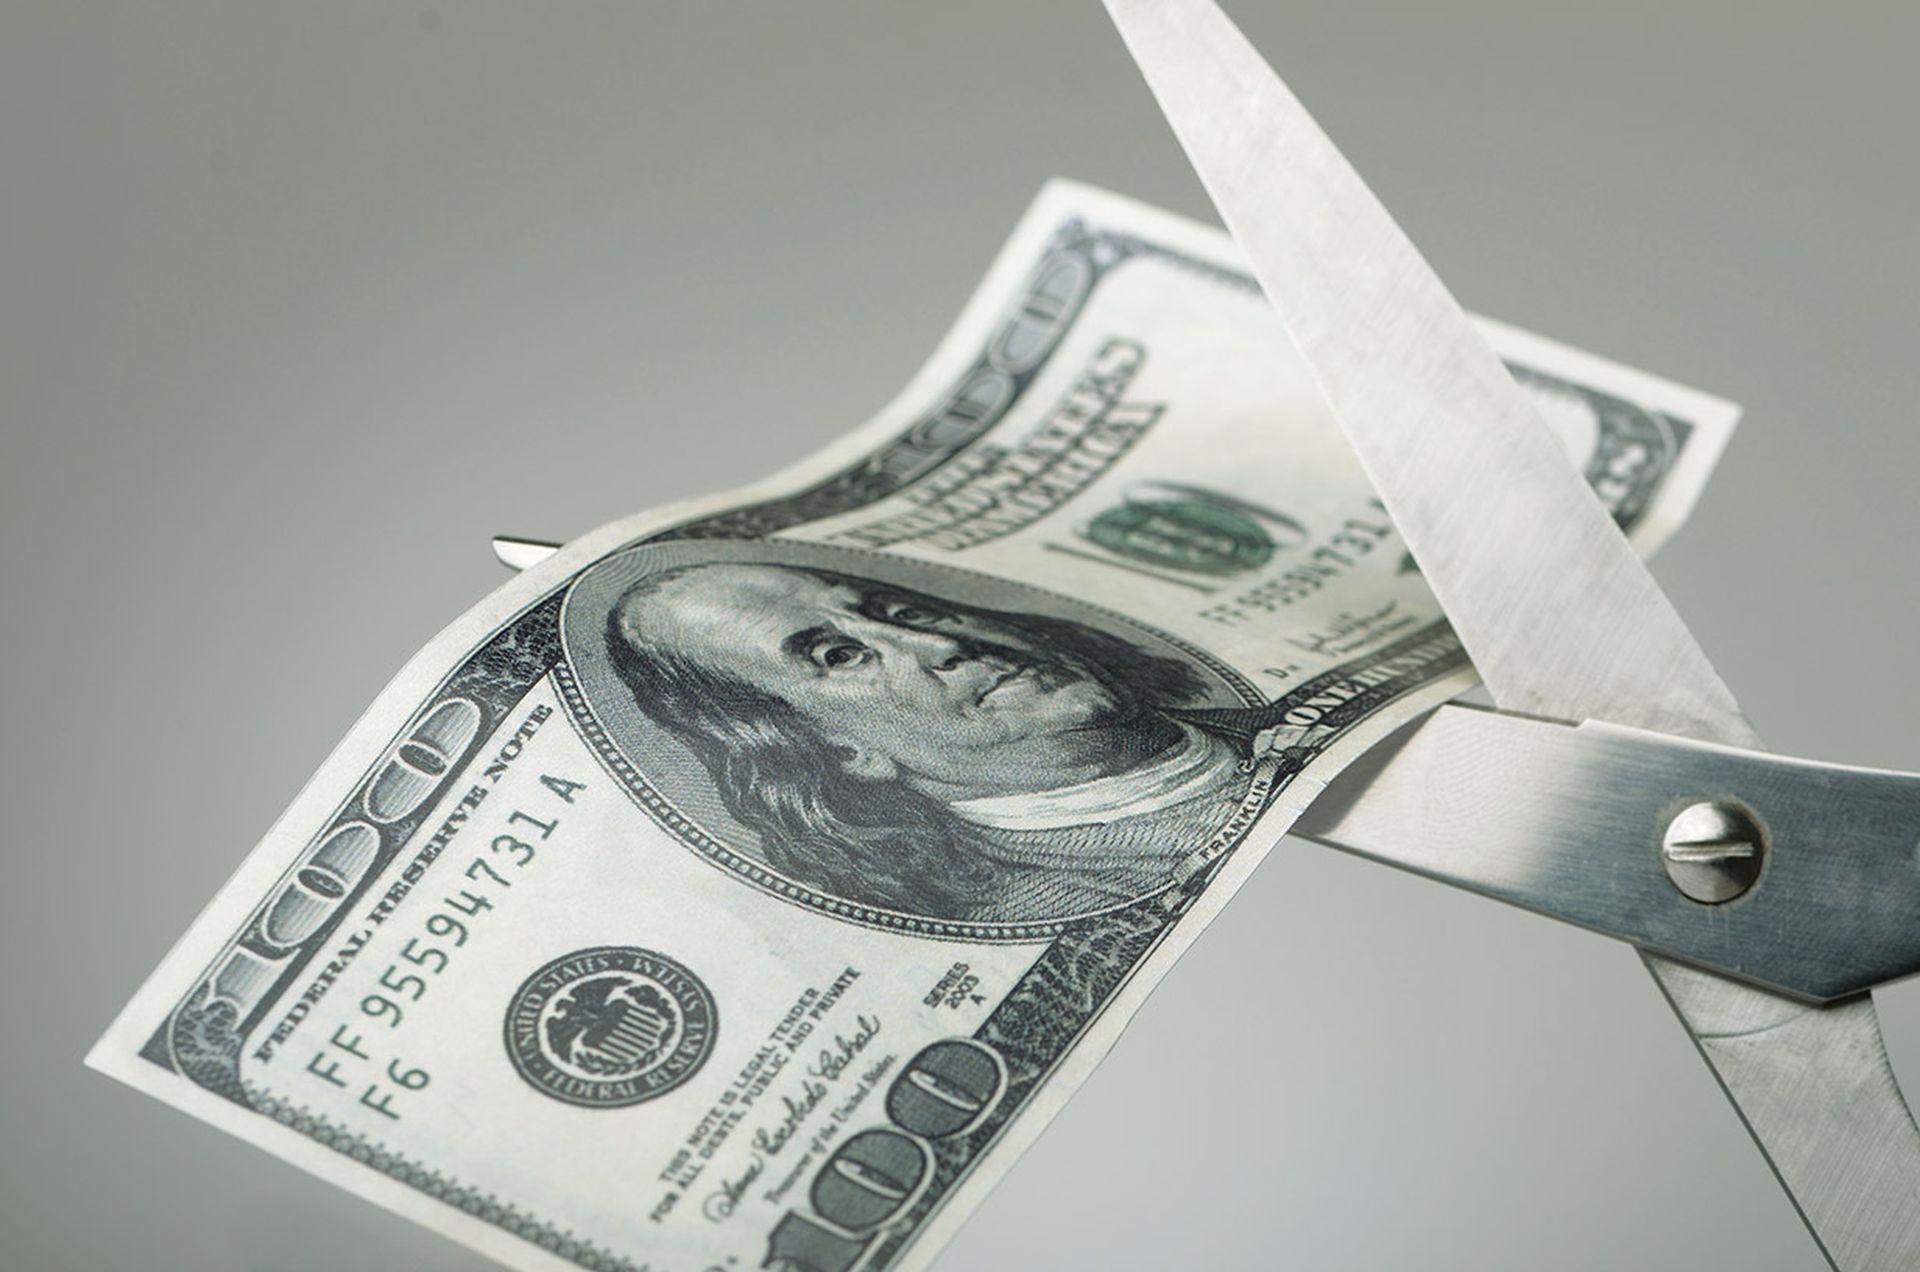 Scissors cutting a $100 bill in half